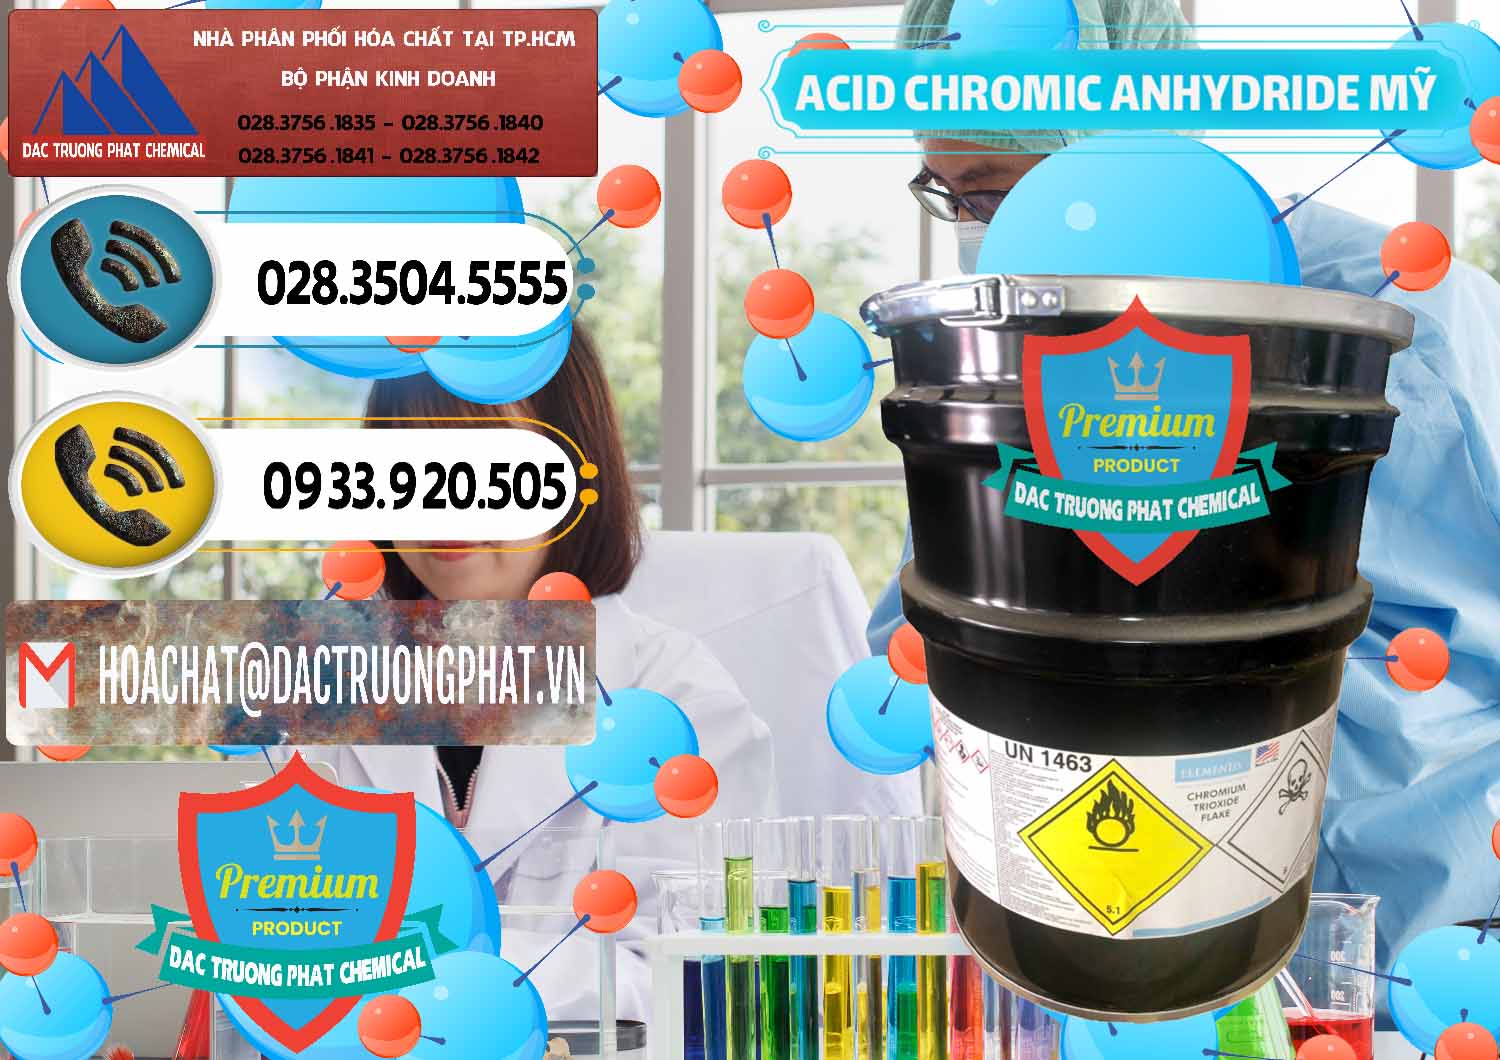 Chuyên phân phối ( bán ) Acid Chromic Anhydride - Cromic CRO3 USA Mỹ - 0364 - Nơi nhập khẩu và cung cấp hóa chất tại TP.HCM - hoachatdetnhuom.vn